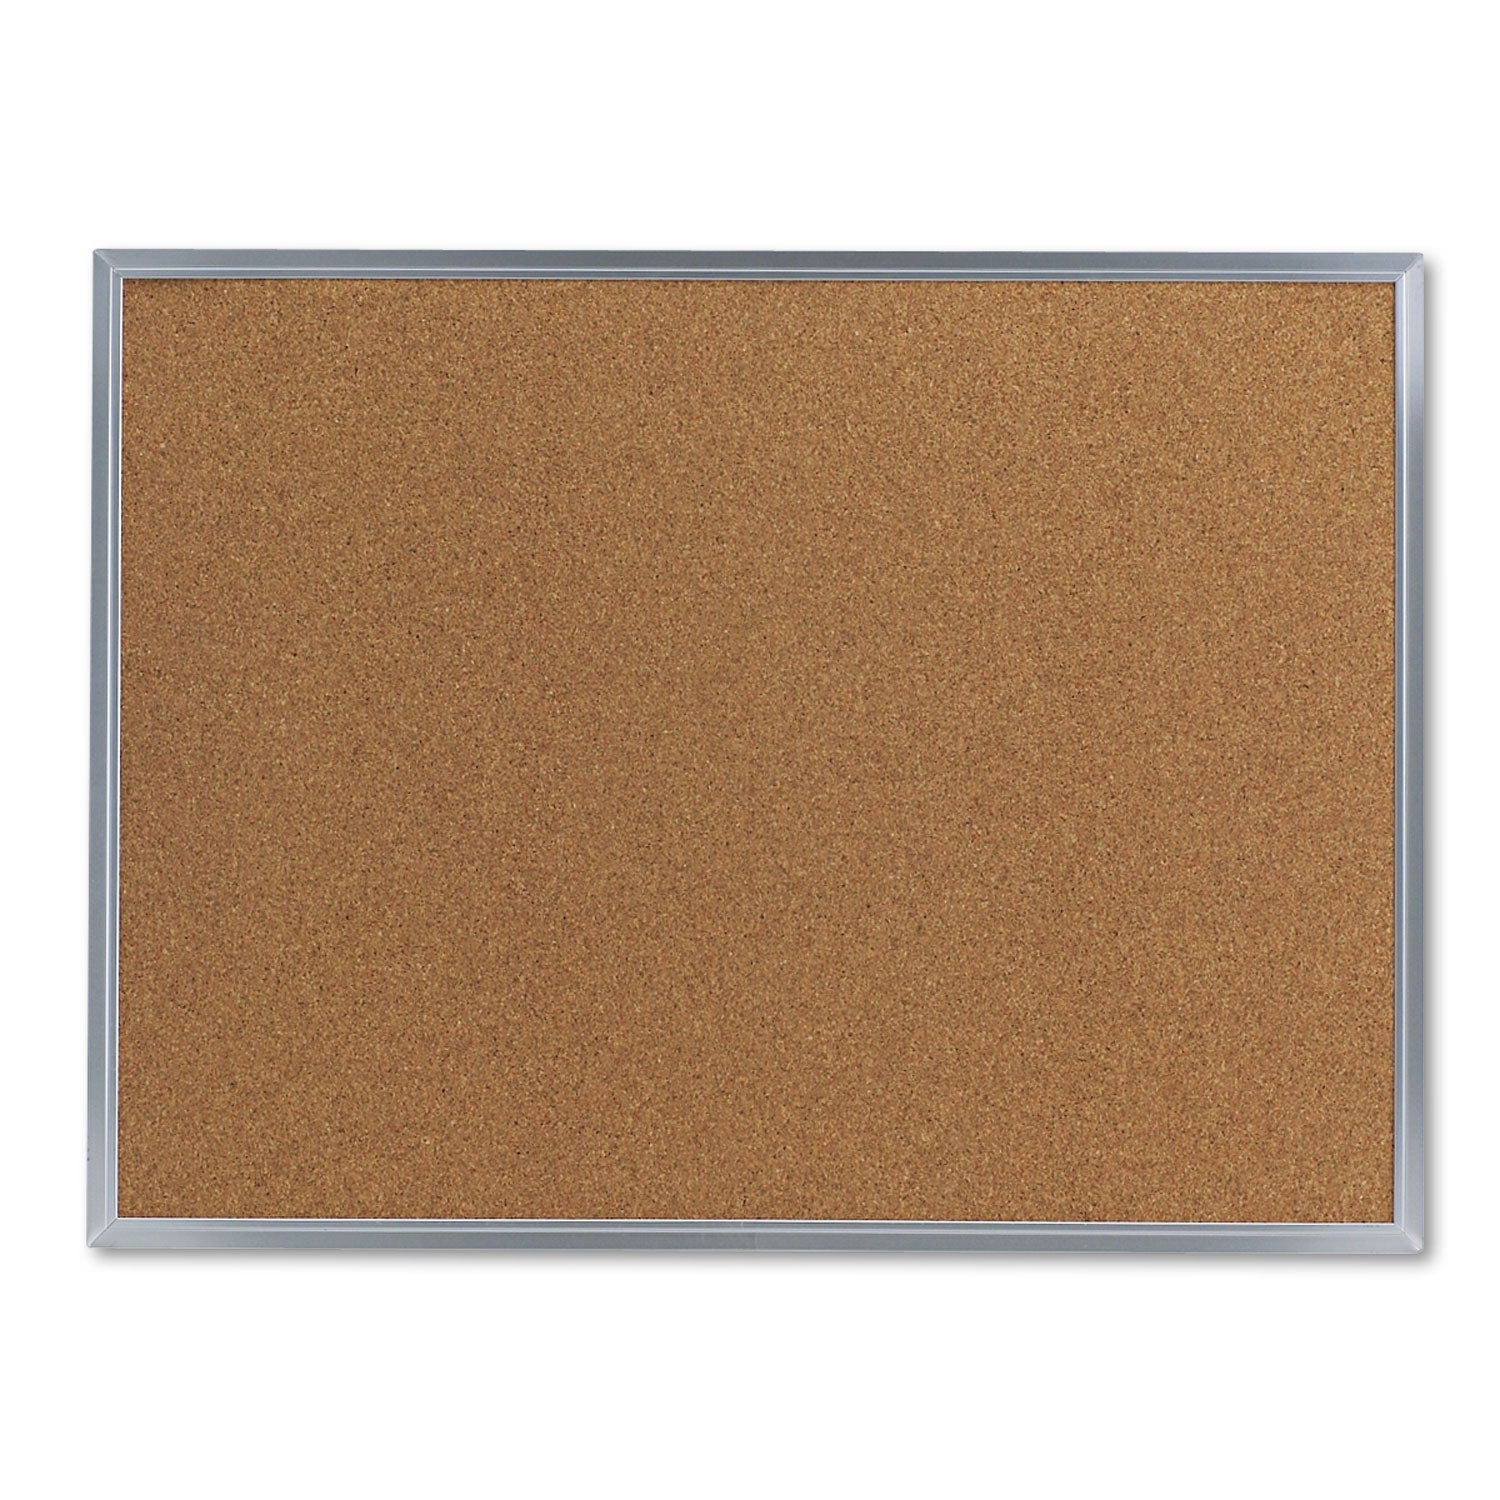 Cork Bulletin Board, 24 x 18, Tan Surface, Aluminum Frame - 